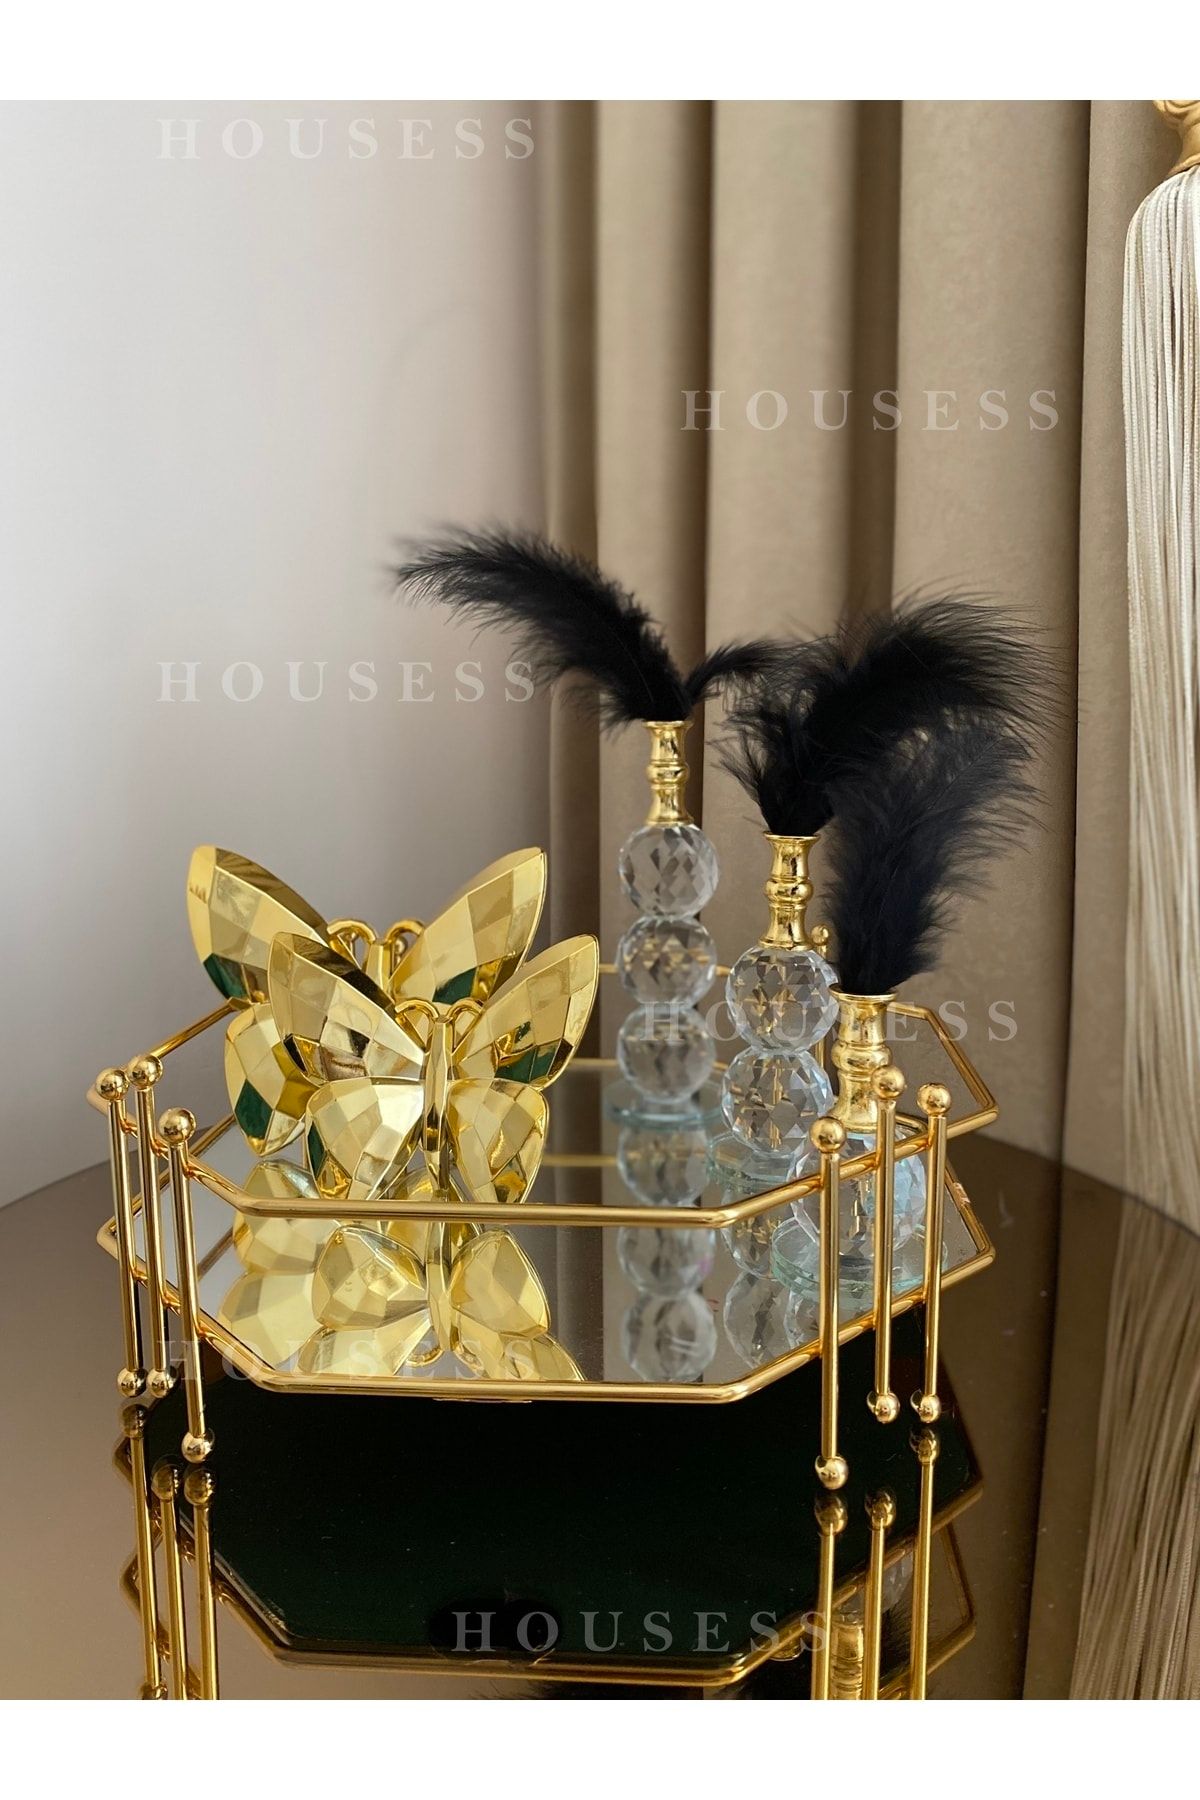 Housess Aynalı Bal Peteği Misketli Gold Dekoratif Tepsi Ve 3'lü Tüylük Ve 2'li Kelebek